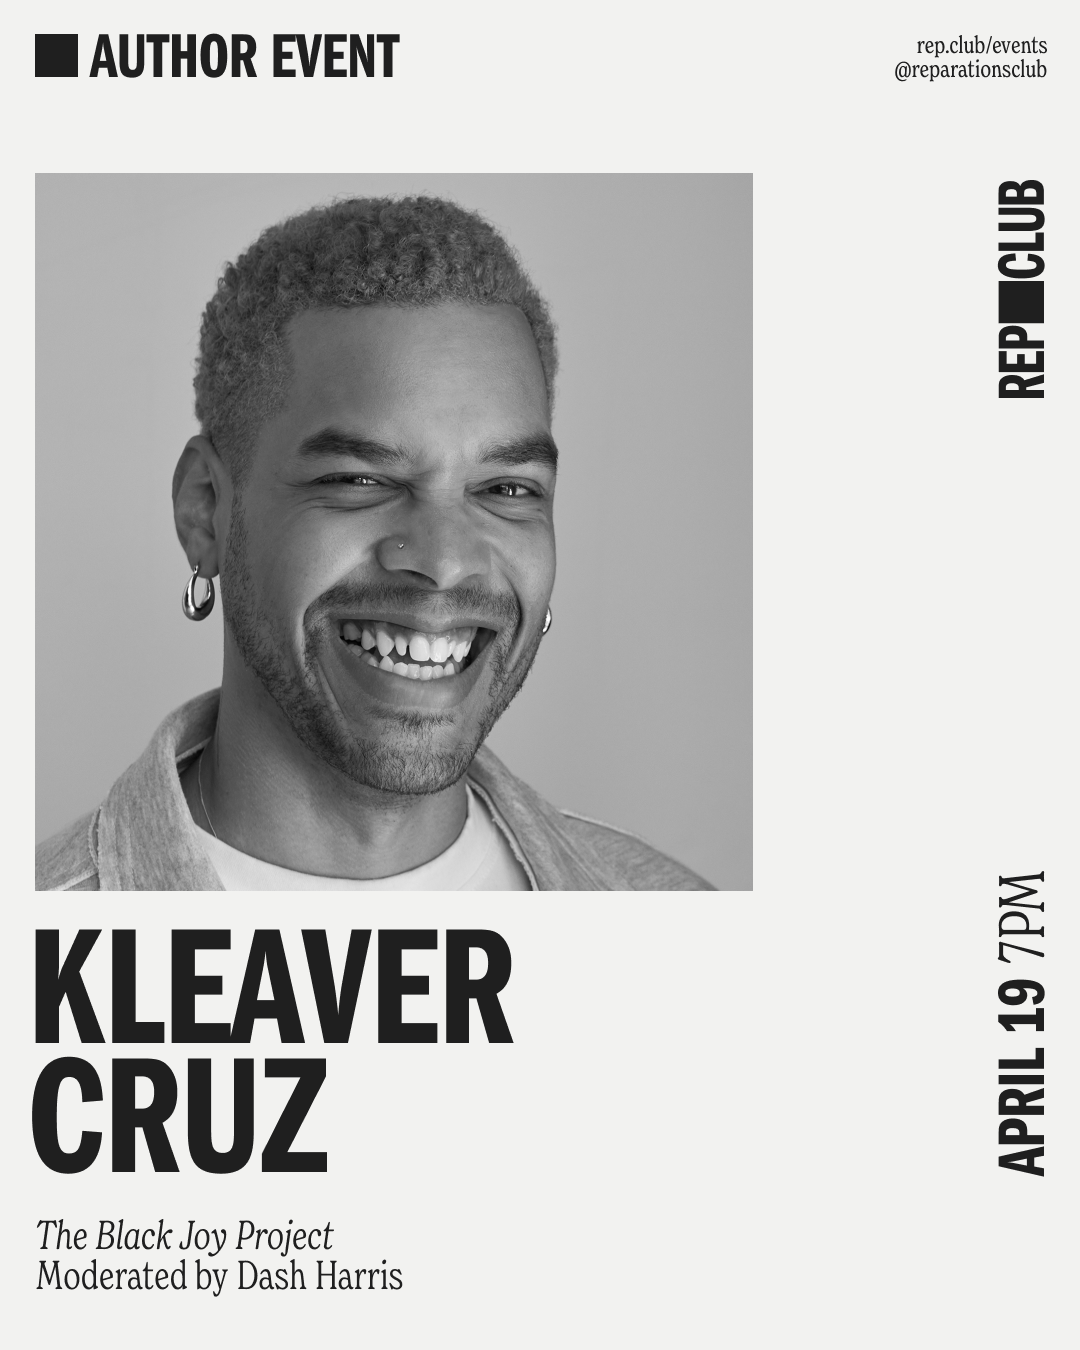 April 19th EVENT: The Black Joy Project // Kleaver Cruz + Dash Harris